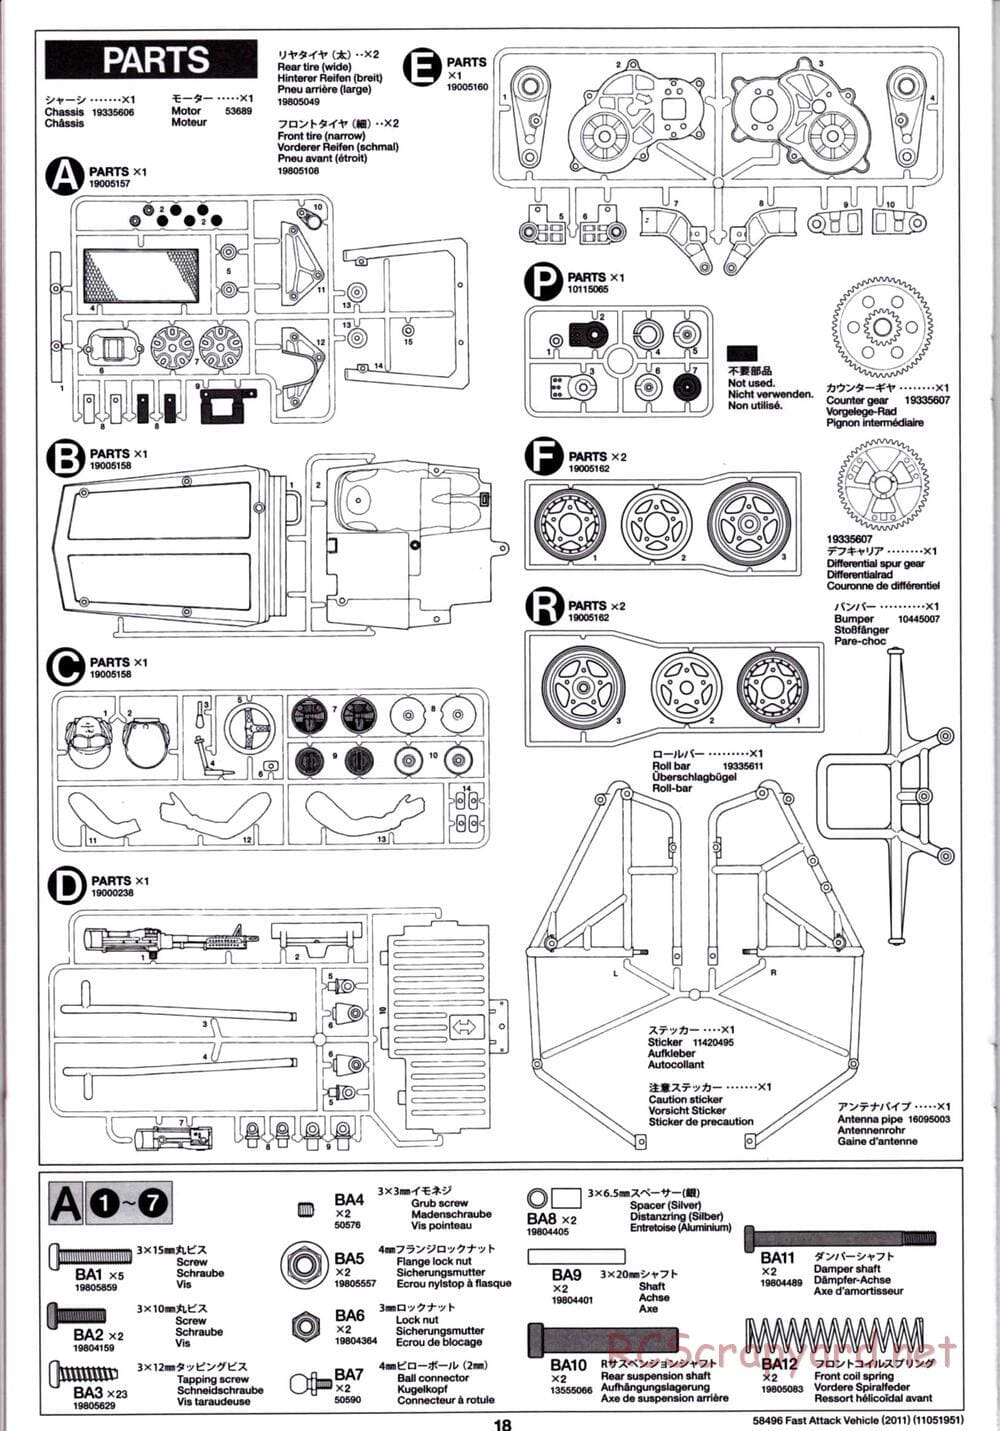 Tamiya - Fast Attack Vehicle 2011 - FAV Chassis - Manual - Page 18